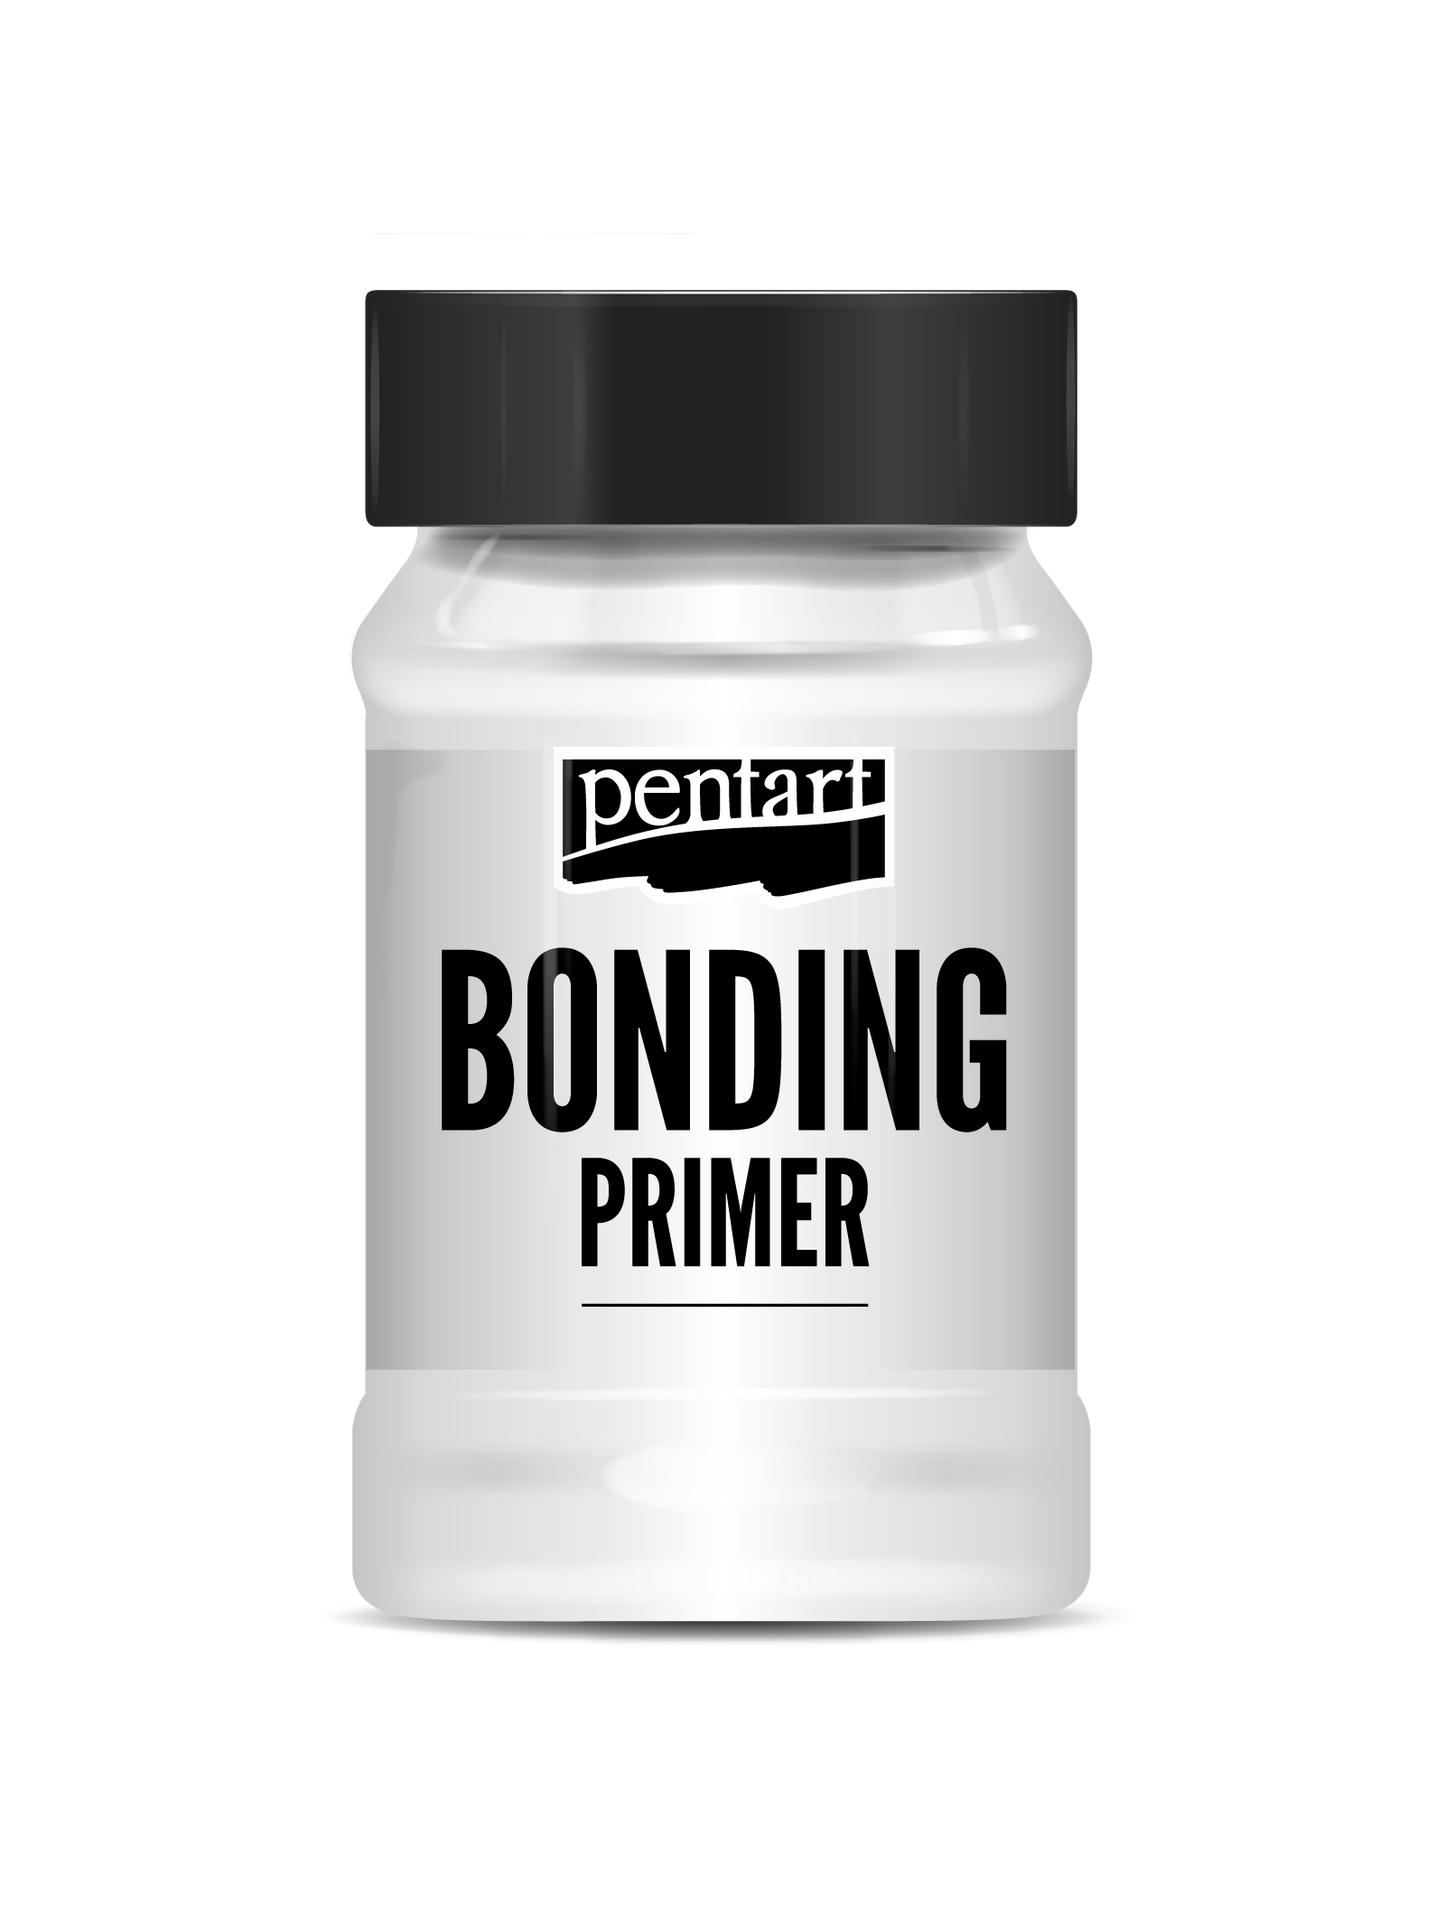 Bonding Primer by Pentart